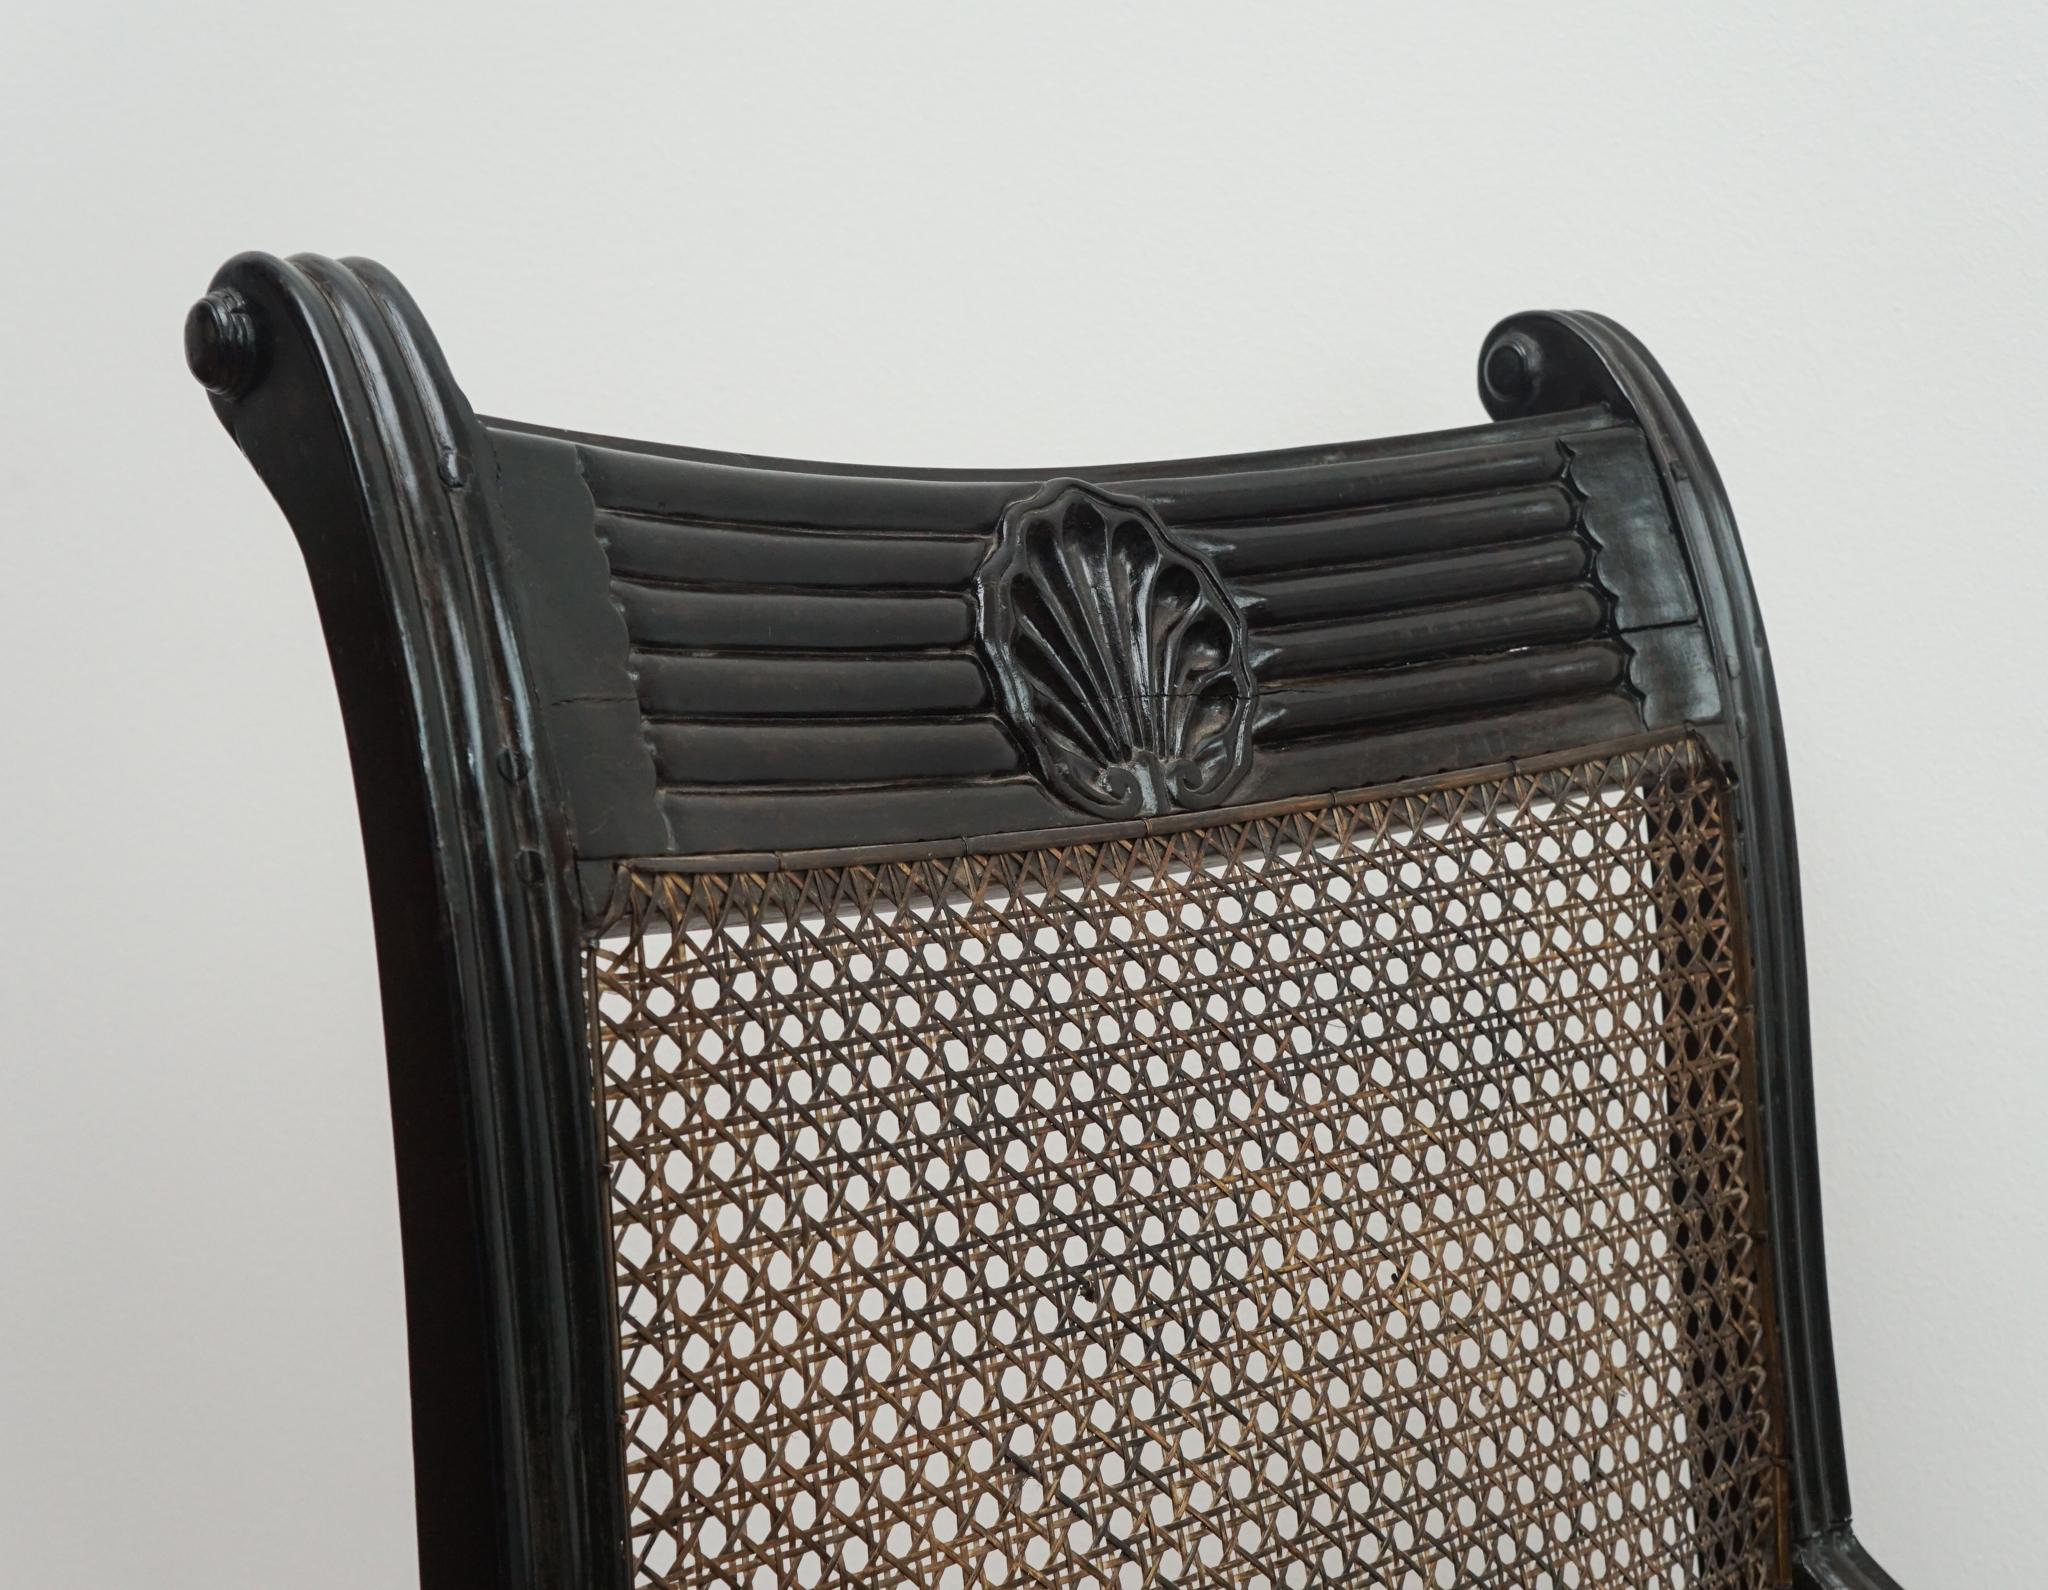 Der hier gezeigte Großvater-Stuhl mit Muschelmarke stammt aus Ceylon, ca. 1820.  Mit seinem exquisit geschnitzten Ebenholzrahmen - der sich durch ein Muschelmarkendetail auf der oberen Schiene auszeichnet - und der von Hand gepolsterten Sitzfläche